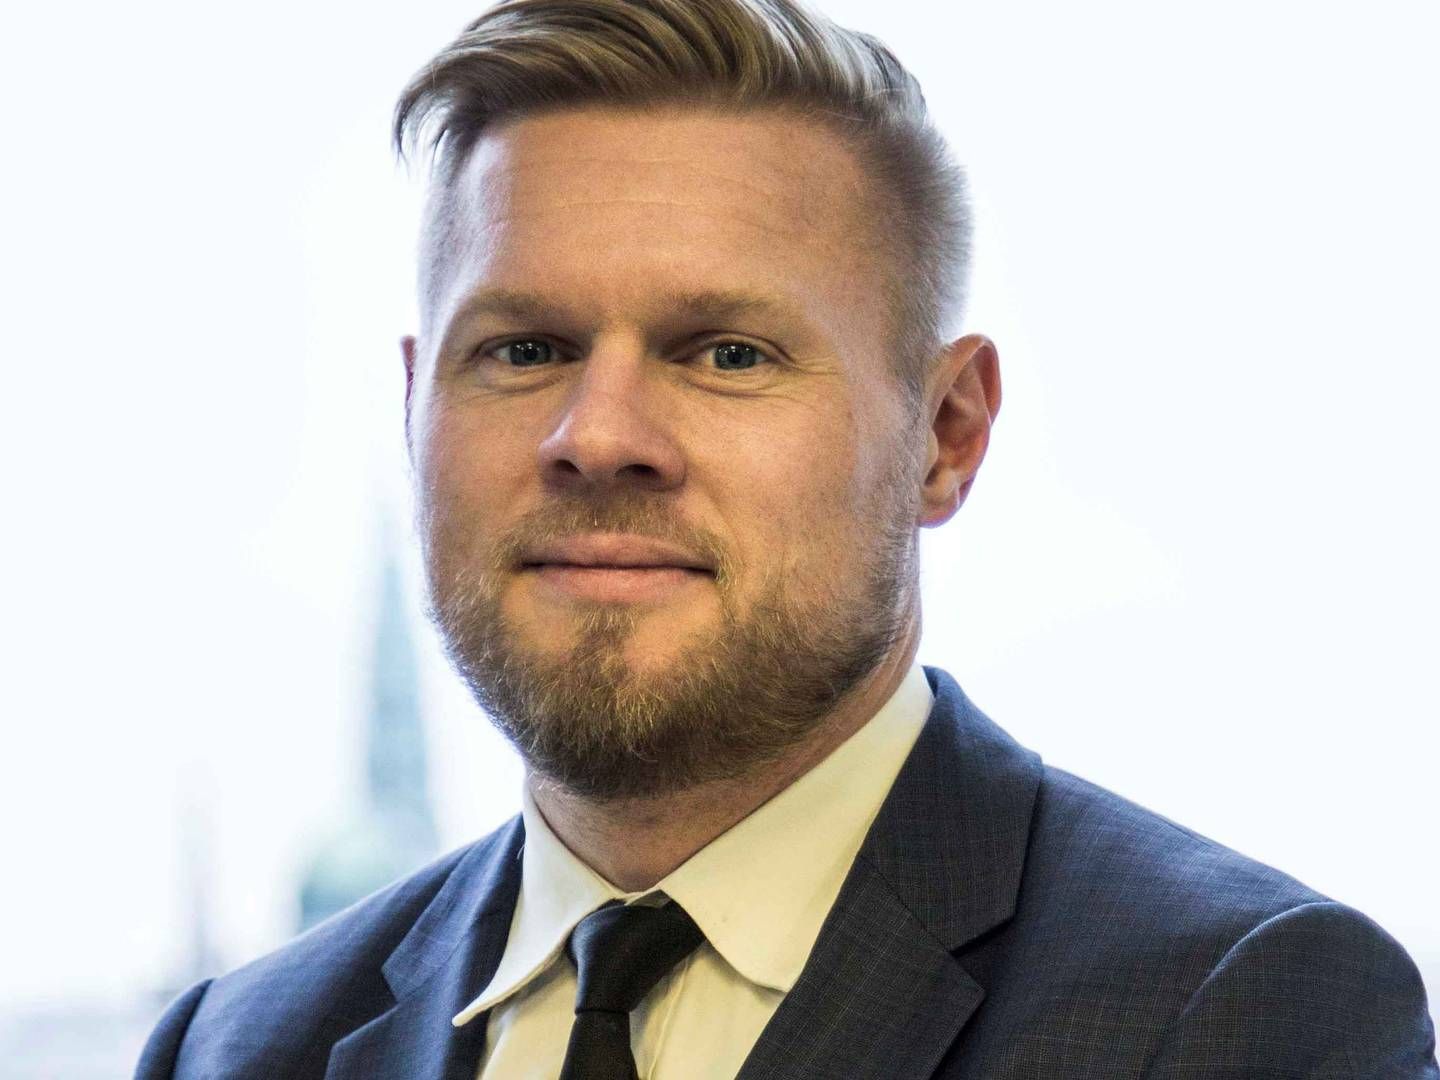 Karsten Rask Mikkelsen kom til Clear Channel i juni i år som ny landechef | Foto: PR